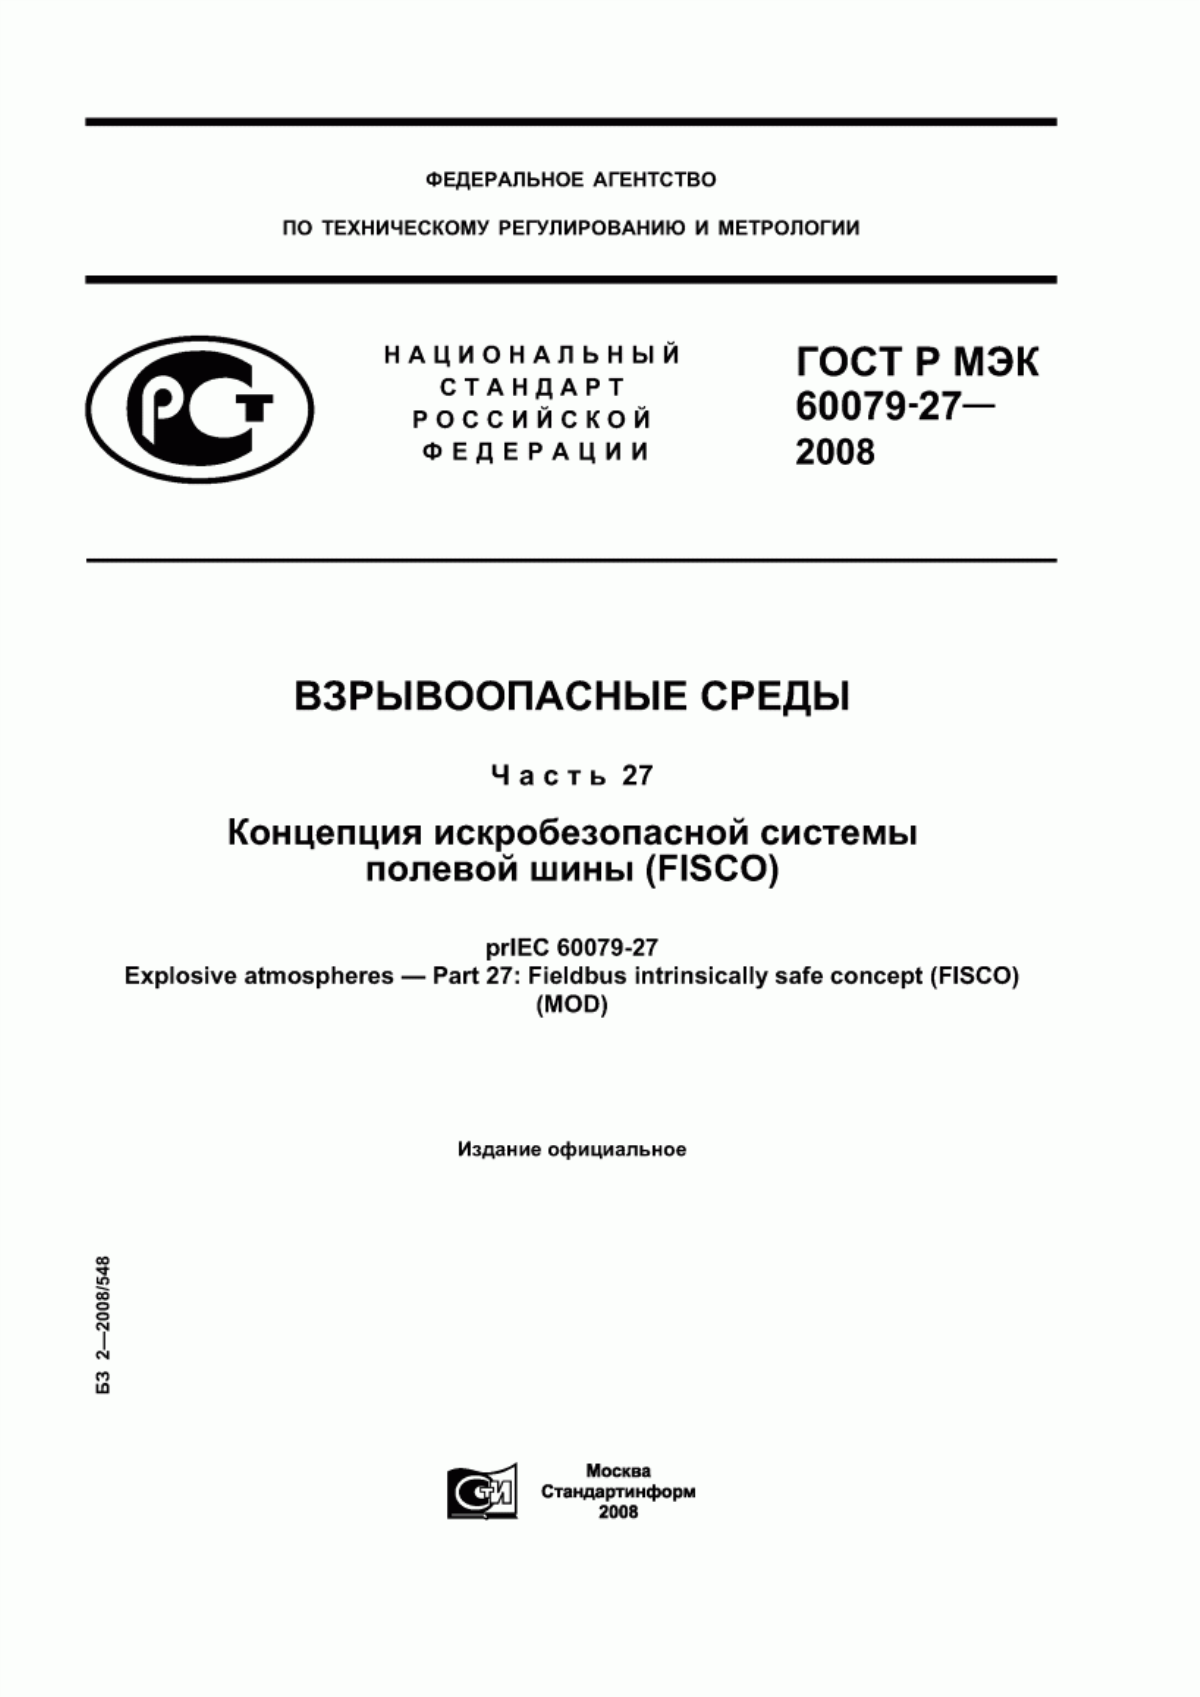 ГОСТ Р МЭК 60079-27-2008 Взрывоопасные среды. Часть 27. Концепция искробезопасной системы полевой шины (FISCO)